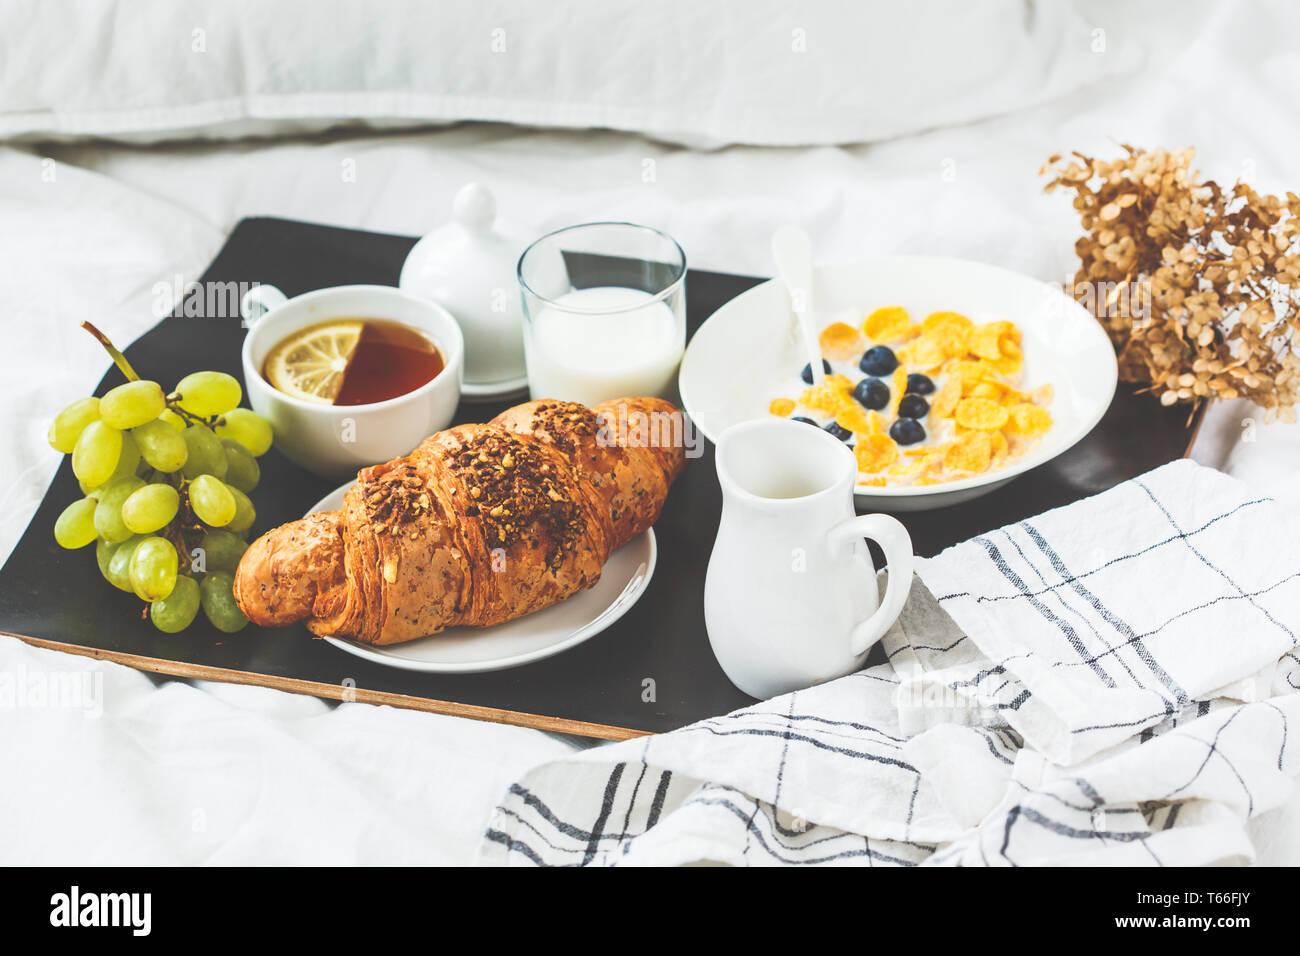 Kontinentales Frühstück im Bett. Croissant, Cornflakes, Tee, Milch und Obst auf einem schwarzen Fach. Stockfoto